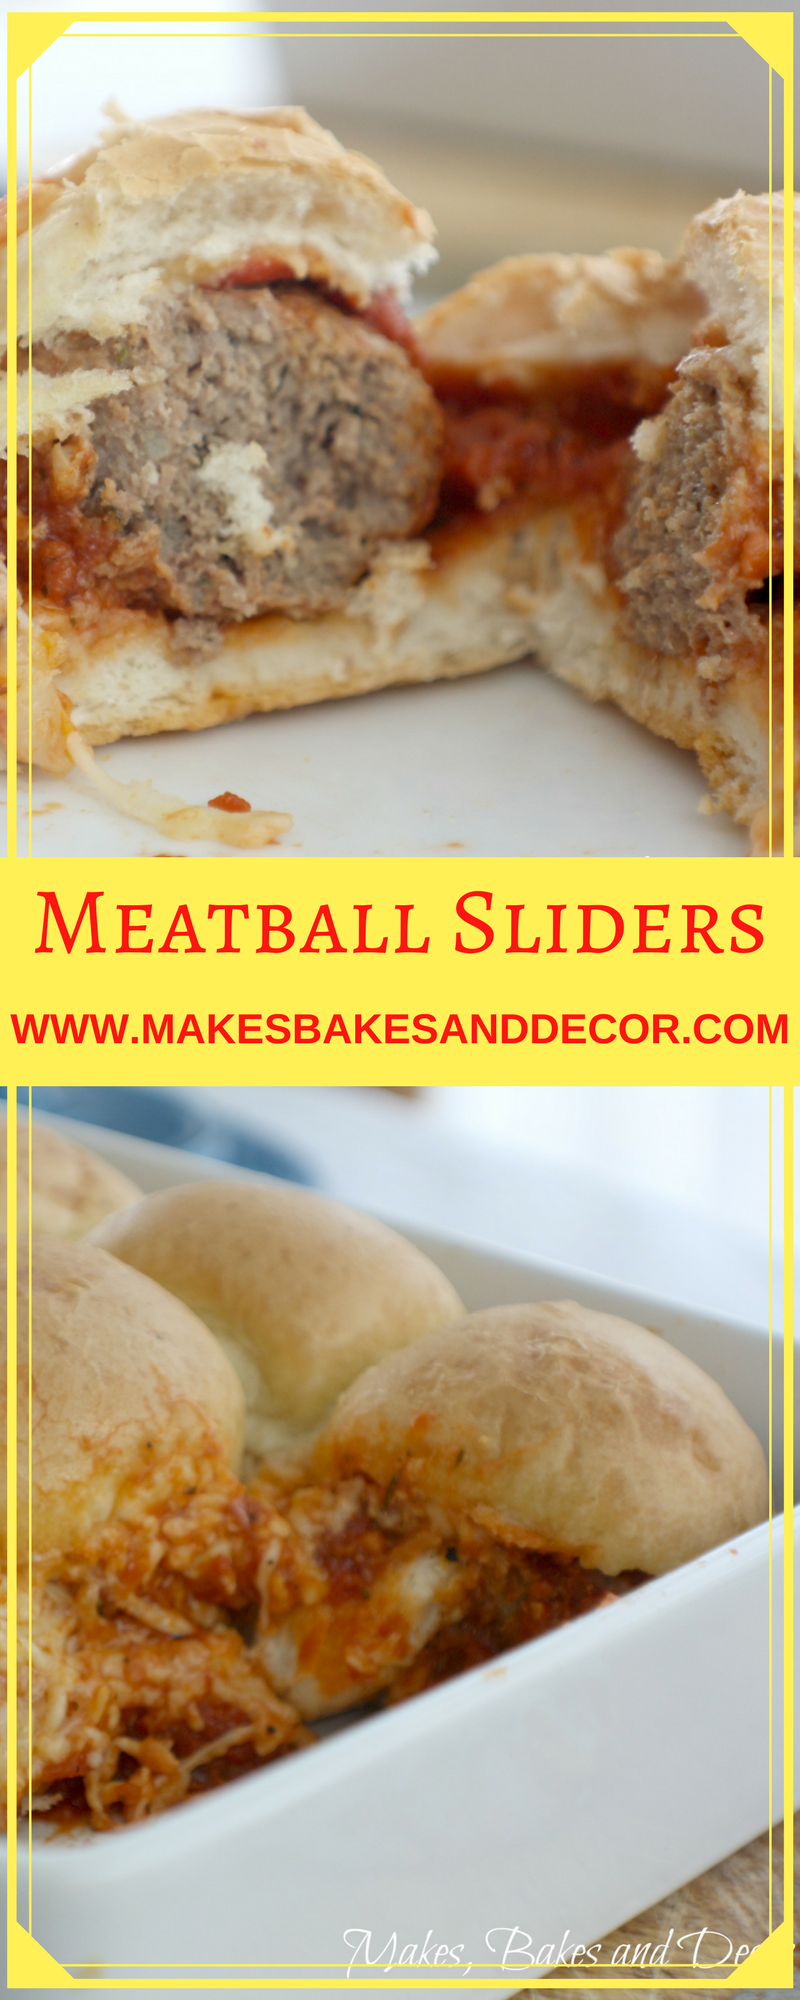 meatball sliders